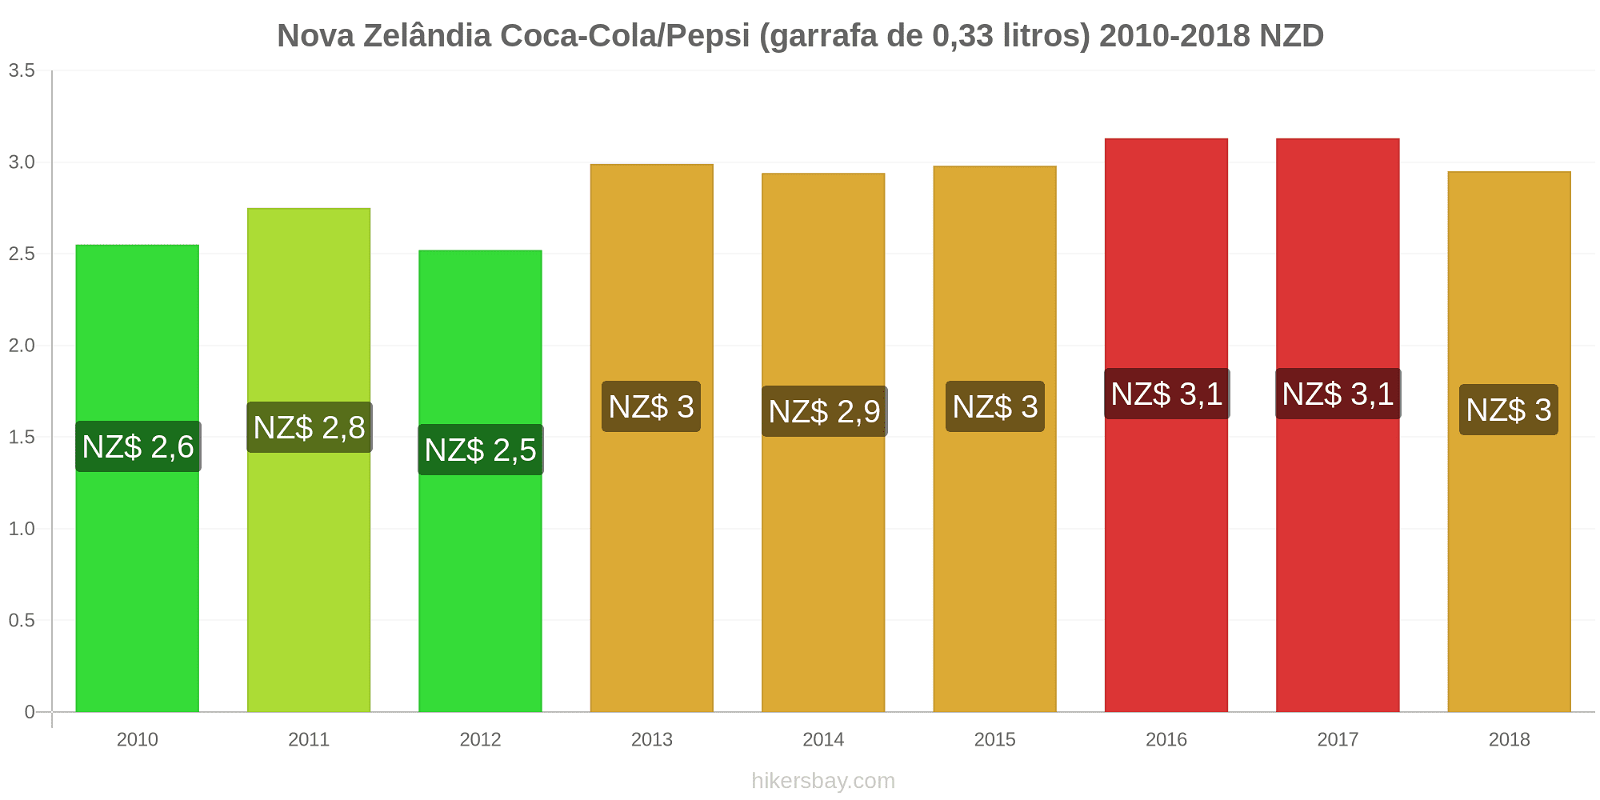 Nova Zelândia mudanças de preços Coca-Cola/Pepsi (garrafa de 0.33 litros) hikersbay.com